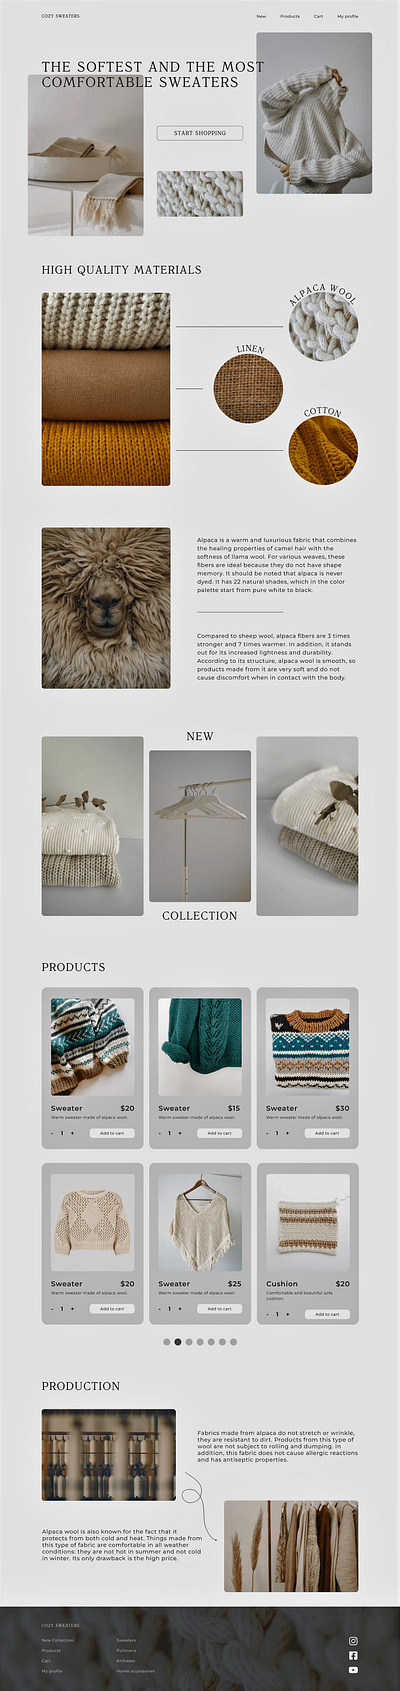 Cozy sweaters, an eCommerce website branding design ecommerce website graphic design illustration logo typography ui ux vector webapp website website design